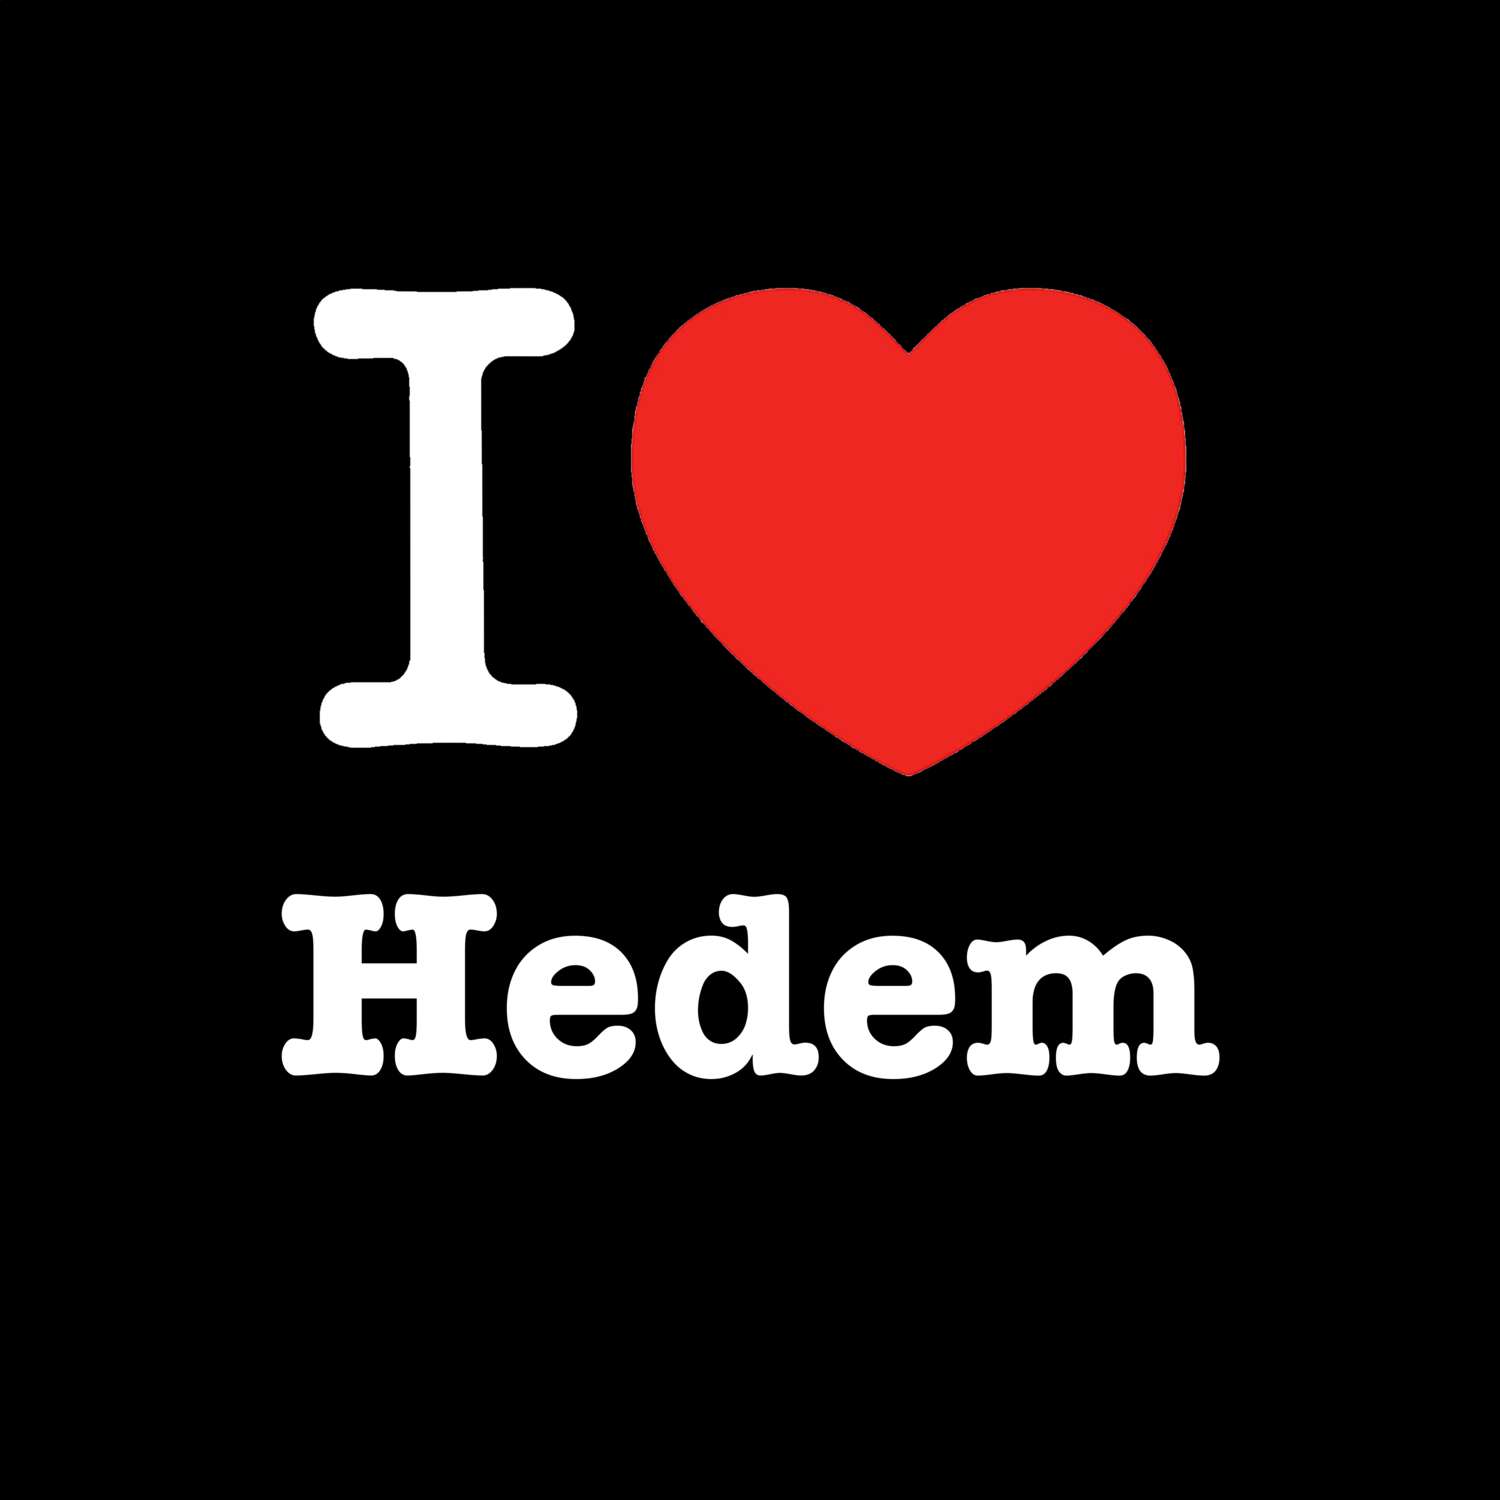 Hedem T-Shirt »I love«